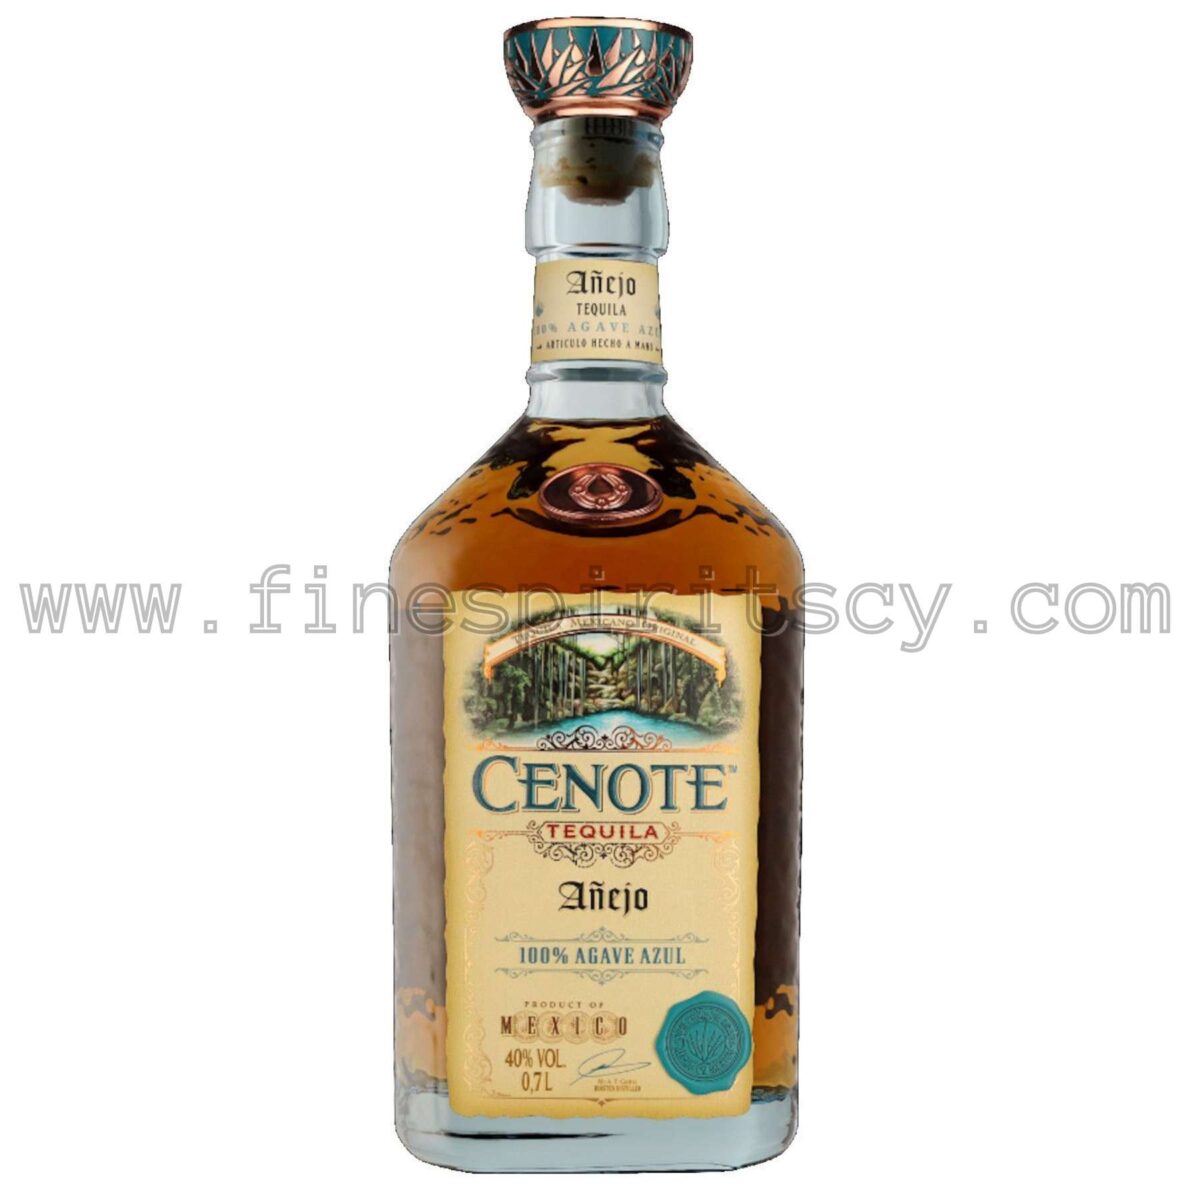 Cenote Anejo 700ml 70cl 0.7L Price Cyprus Order Online Tequila FSCY Buy Shop